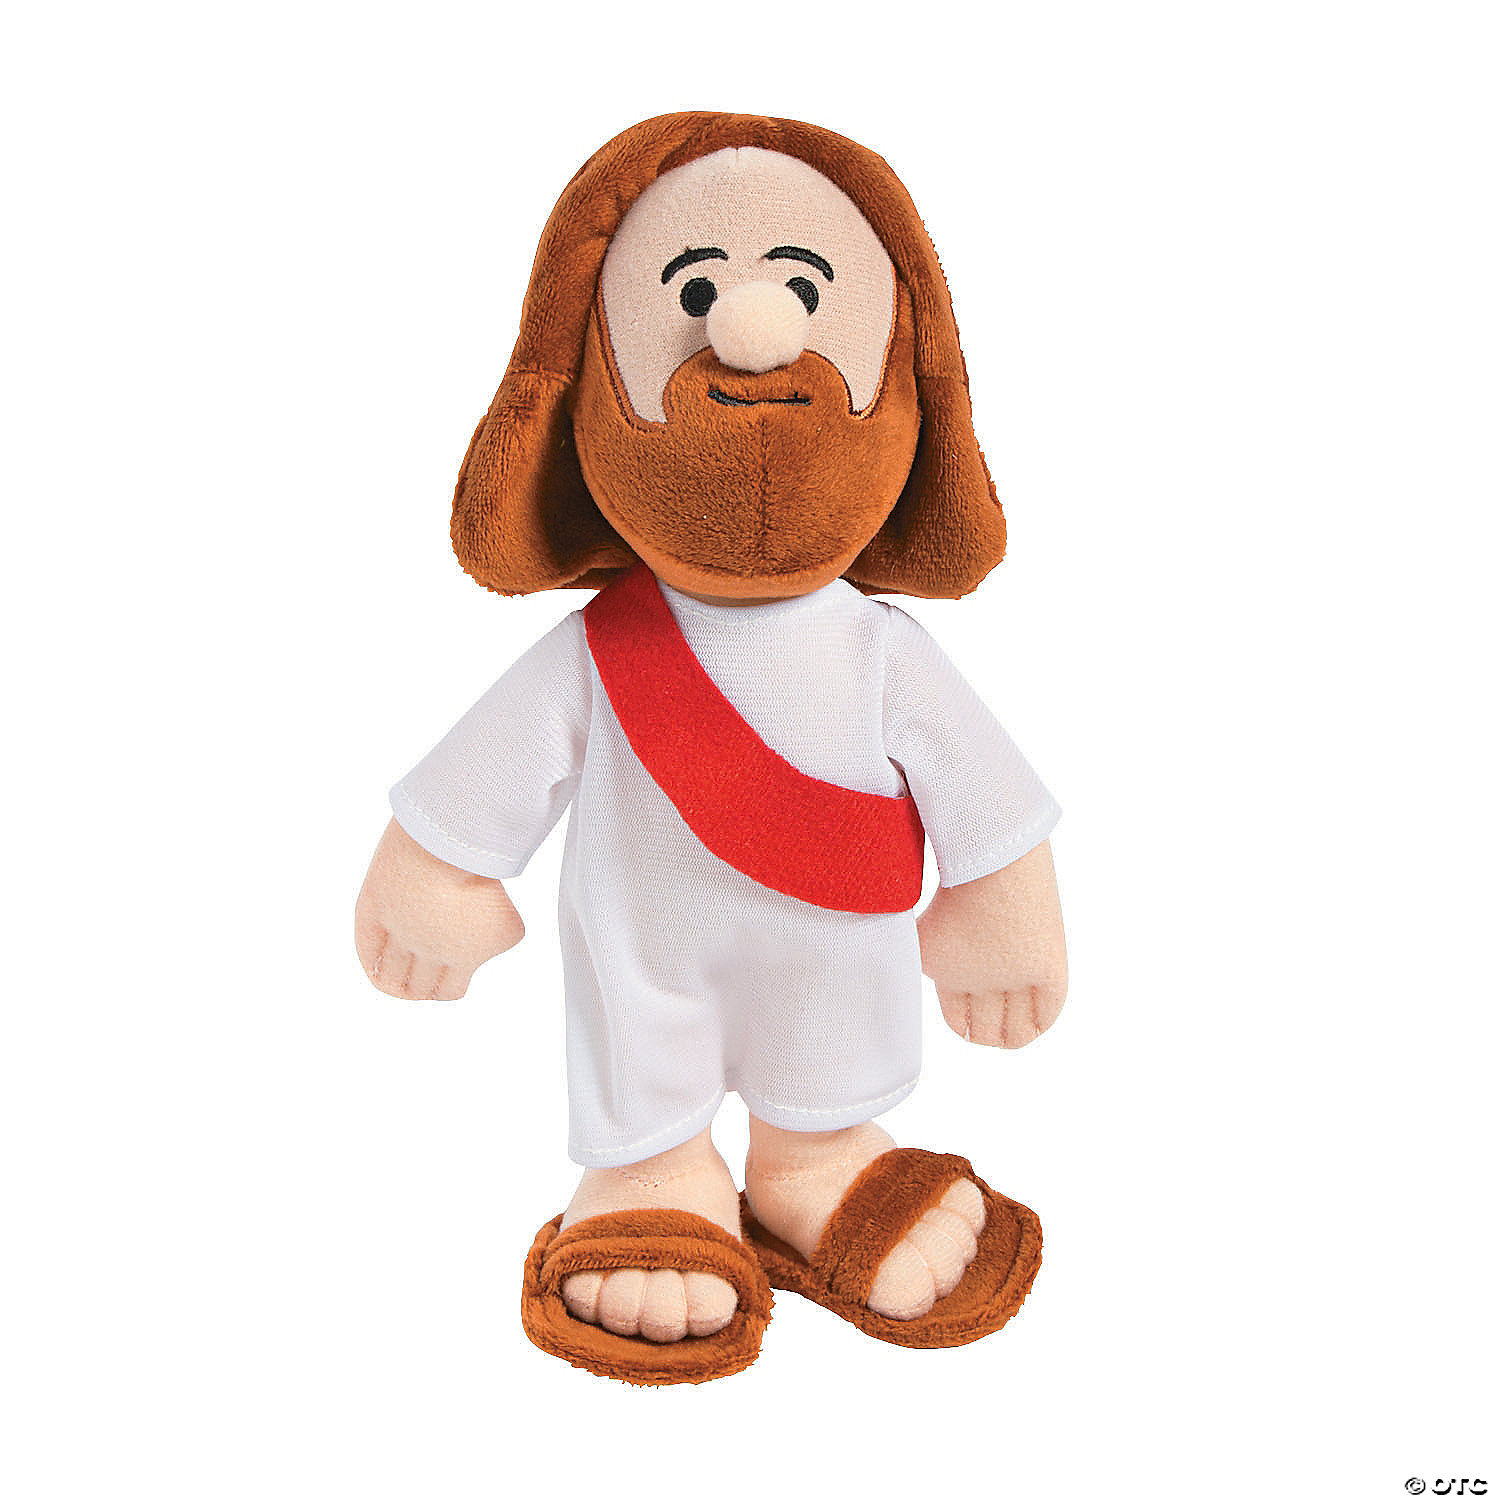 Plush Religious childrens stuffed animal toys 